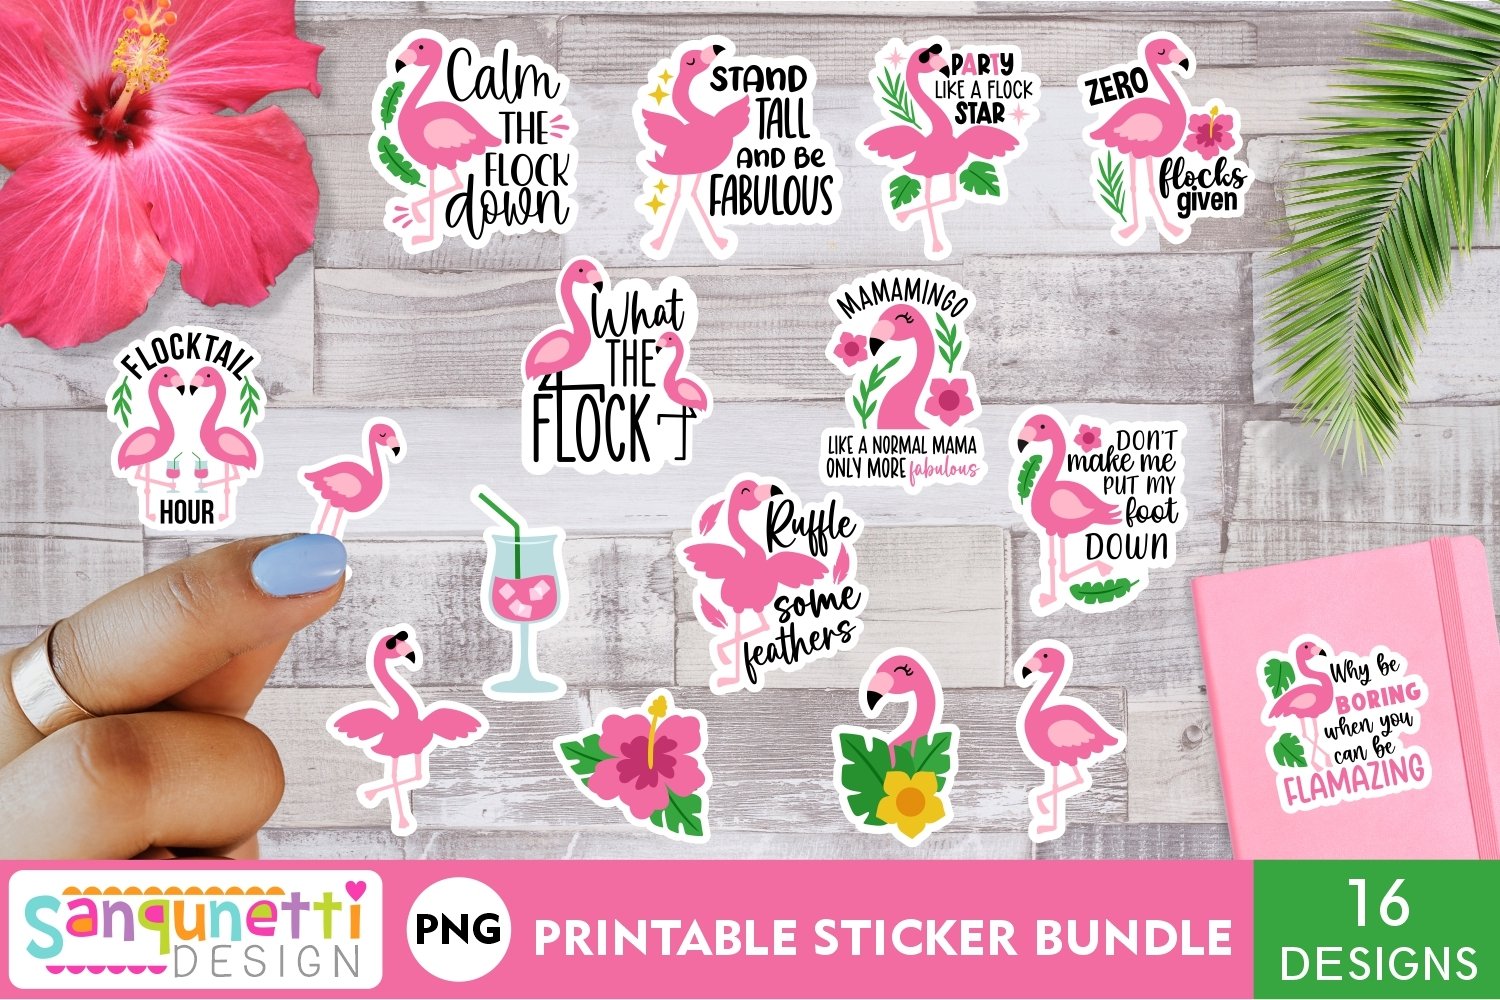 Cover image of Sassy Flamingo sticker bundle.